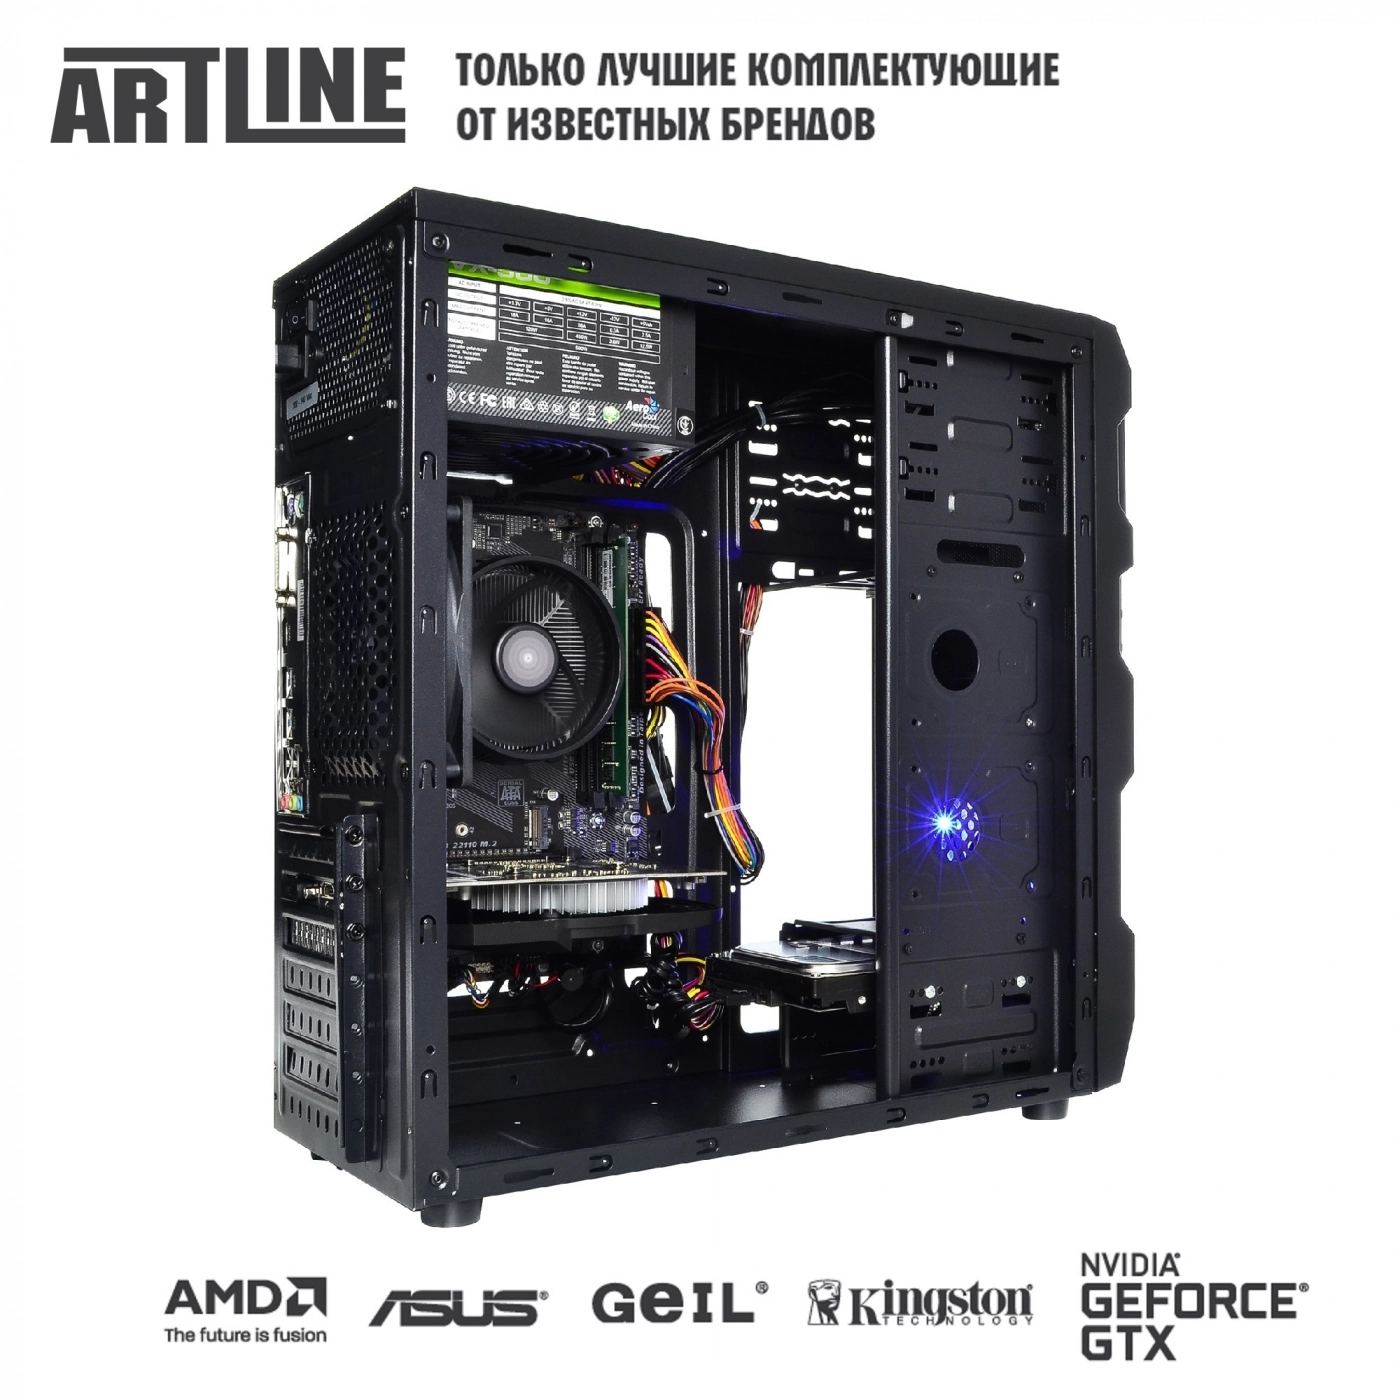 Купить Компьютер ARTLINE Gaming X43v17 - фото 6